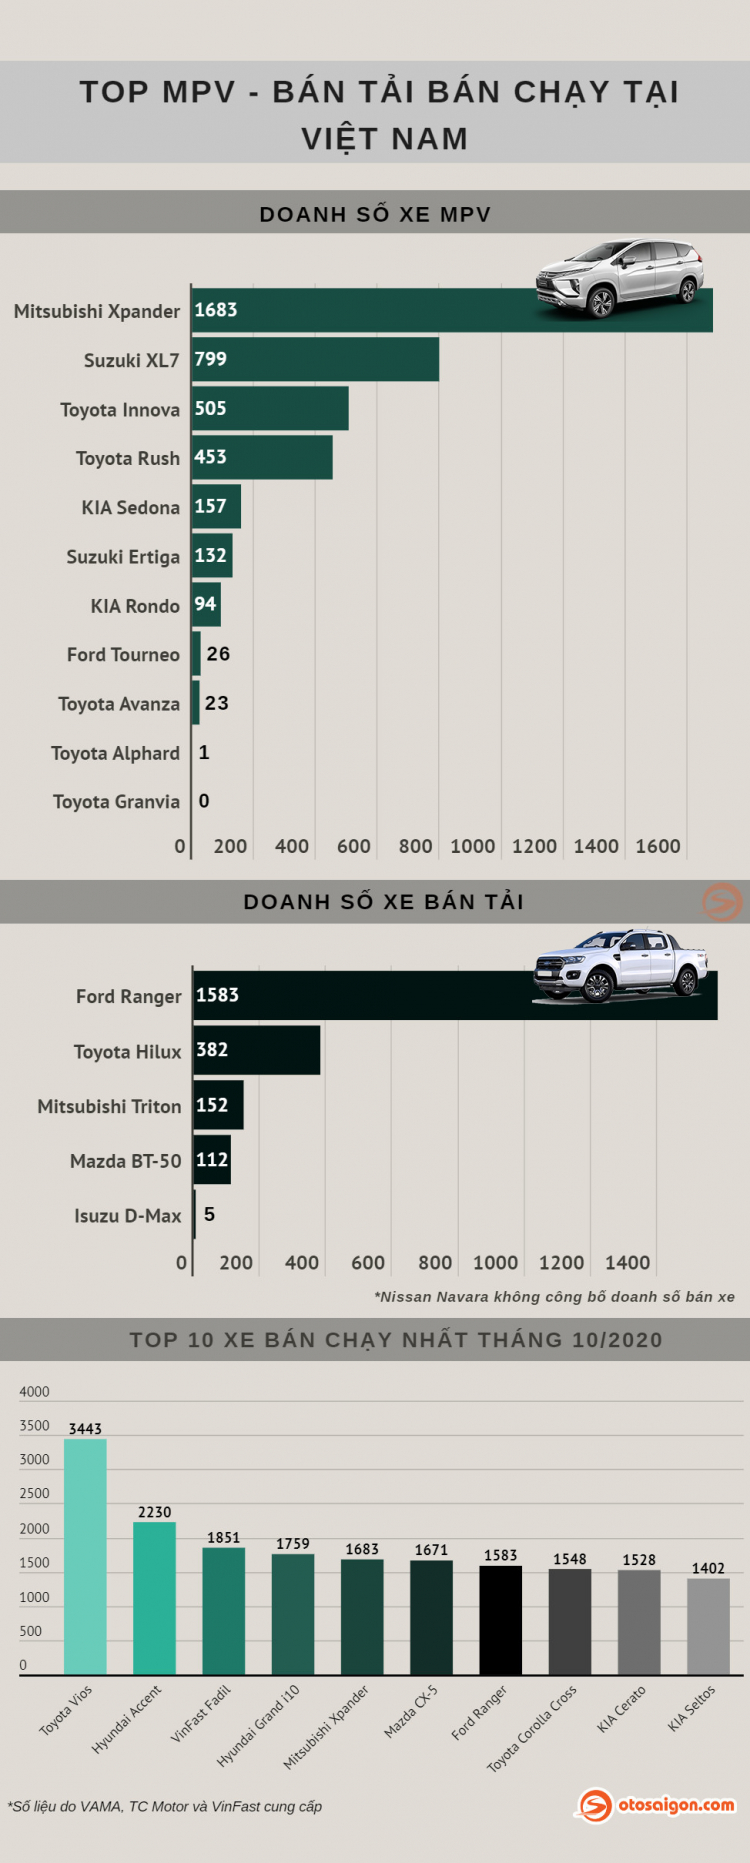 [Infographic] Top MPV/Bán tải bán chạy tháng 10/2020: Xpander và Ranger vẫn là một thế lực quá mạnh